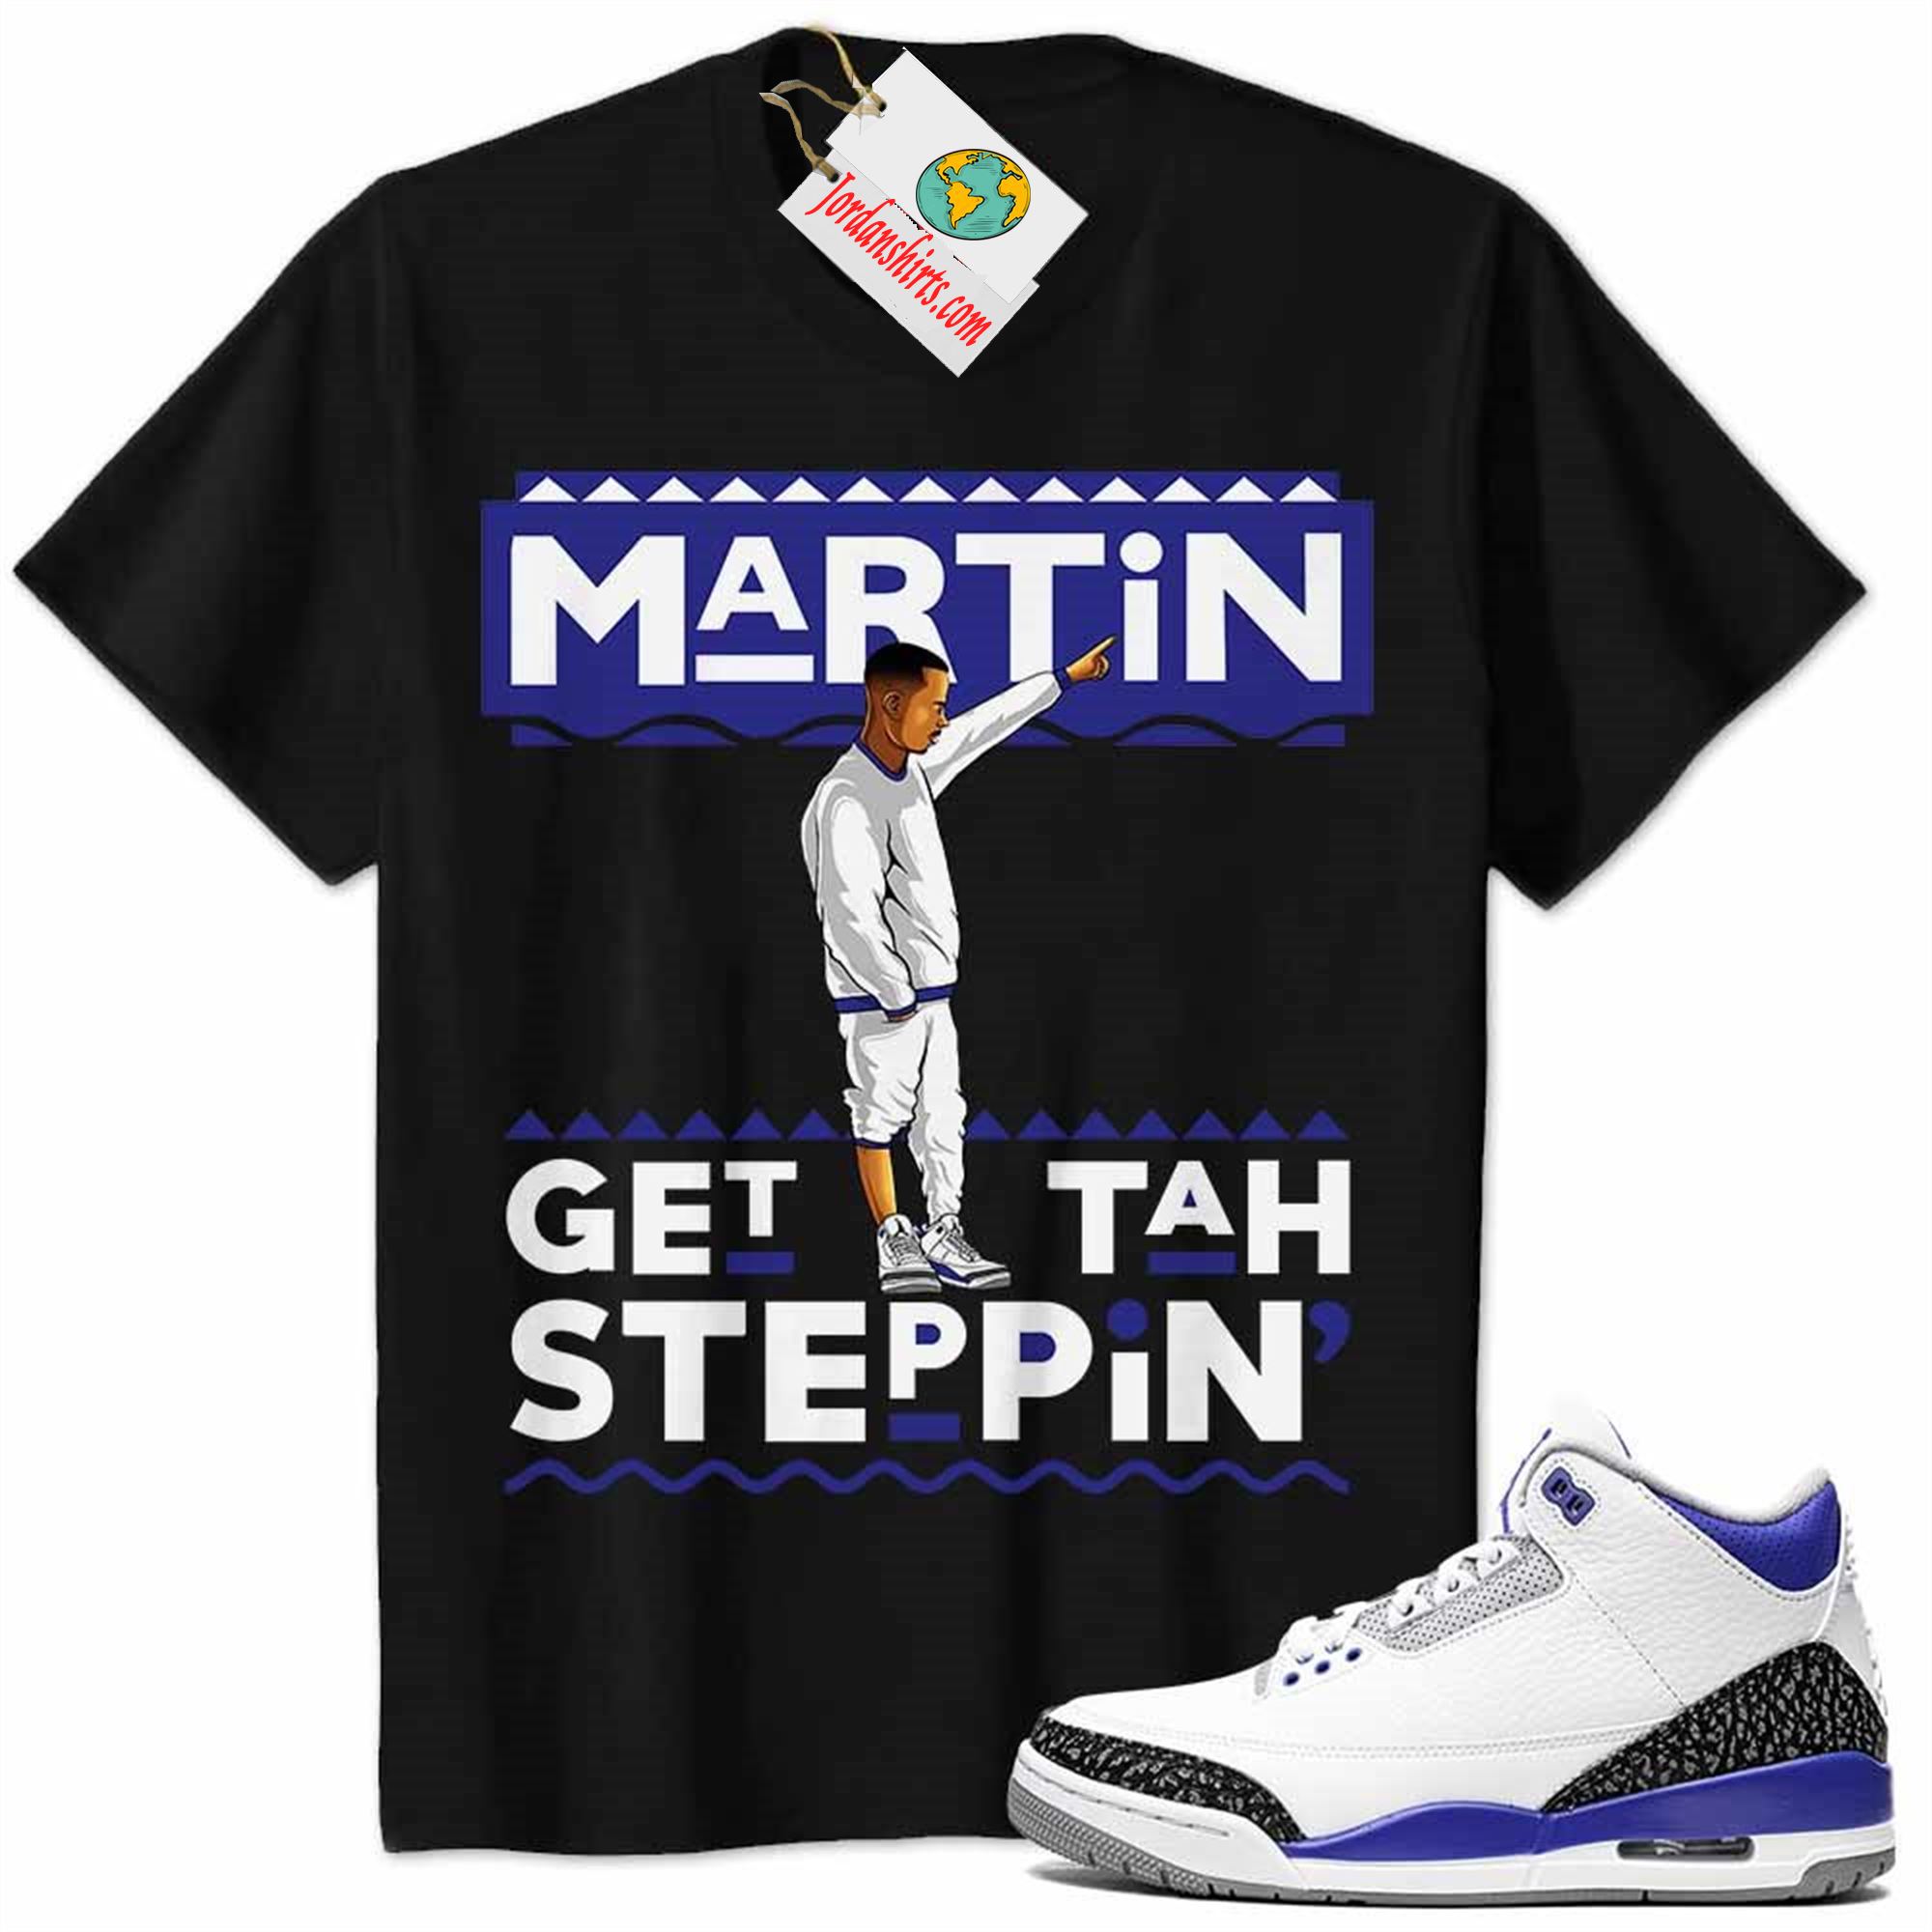 Jordan 3 Shirt, Jordan 3 Racer Blue Shirt Martin Get Tah Steppin Black Size Up To 5xl